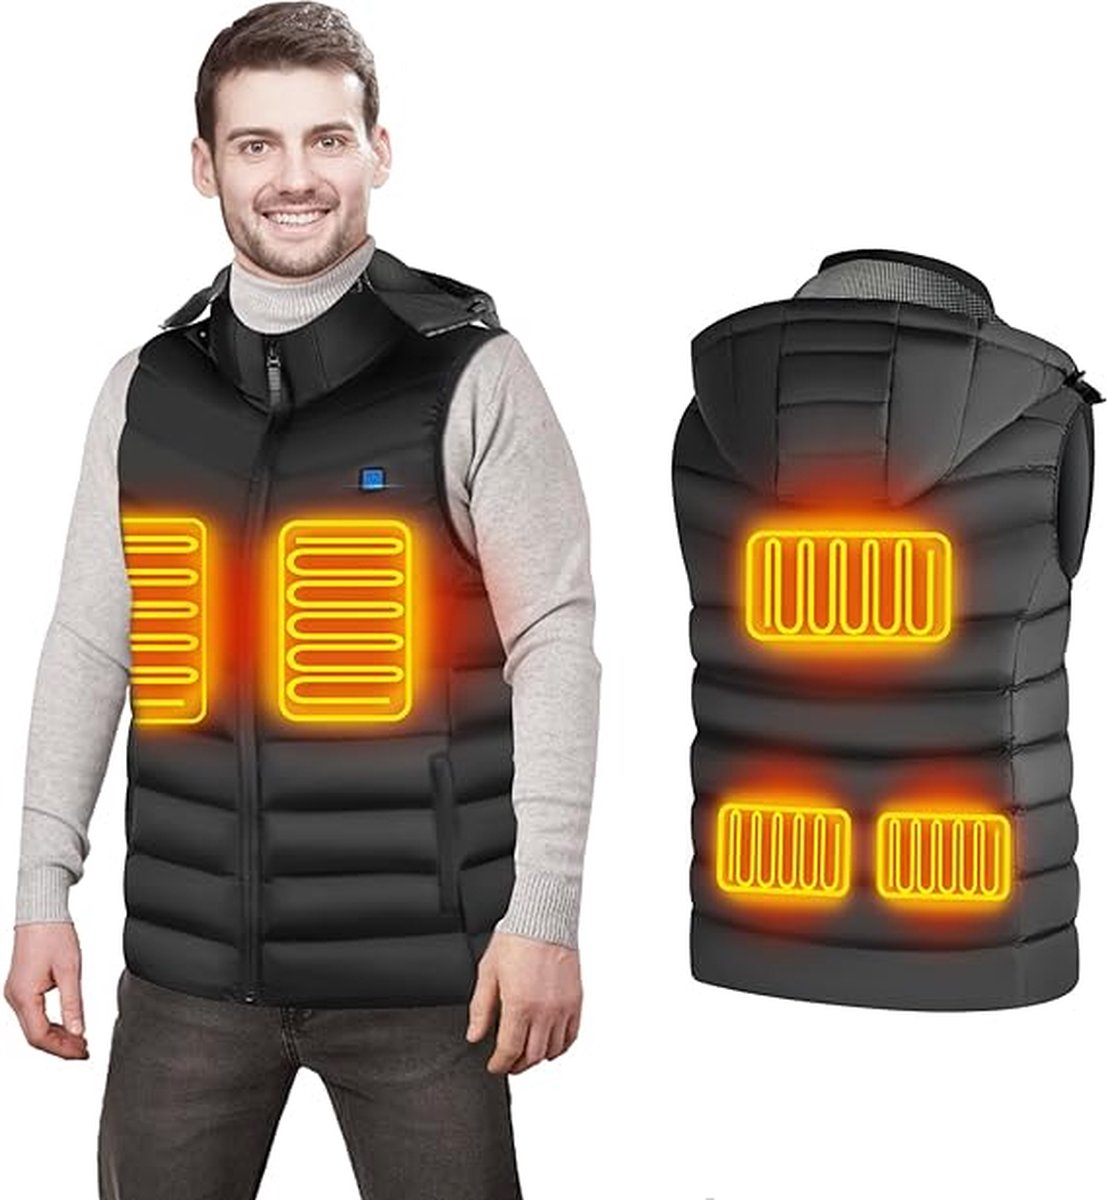 USB verwarmd vest - Voor dames en heren - Maat 4XL - Bodywarmer met 3 warmte niveaus - 5 verwarming zones - Afneembare capuchon - Verstelbare temperatuur - Zwart